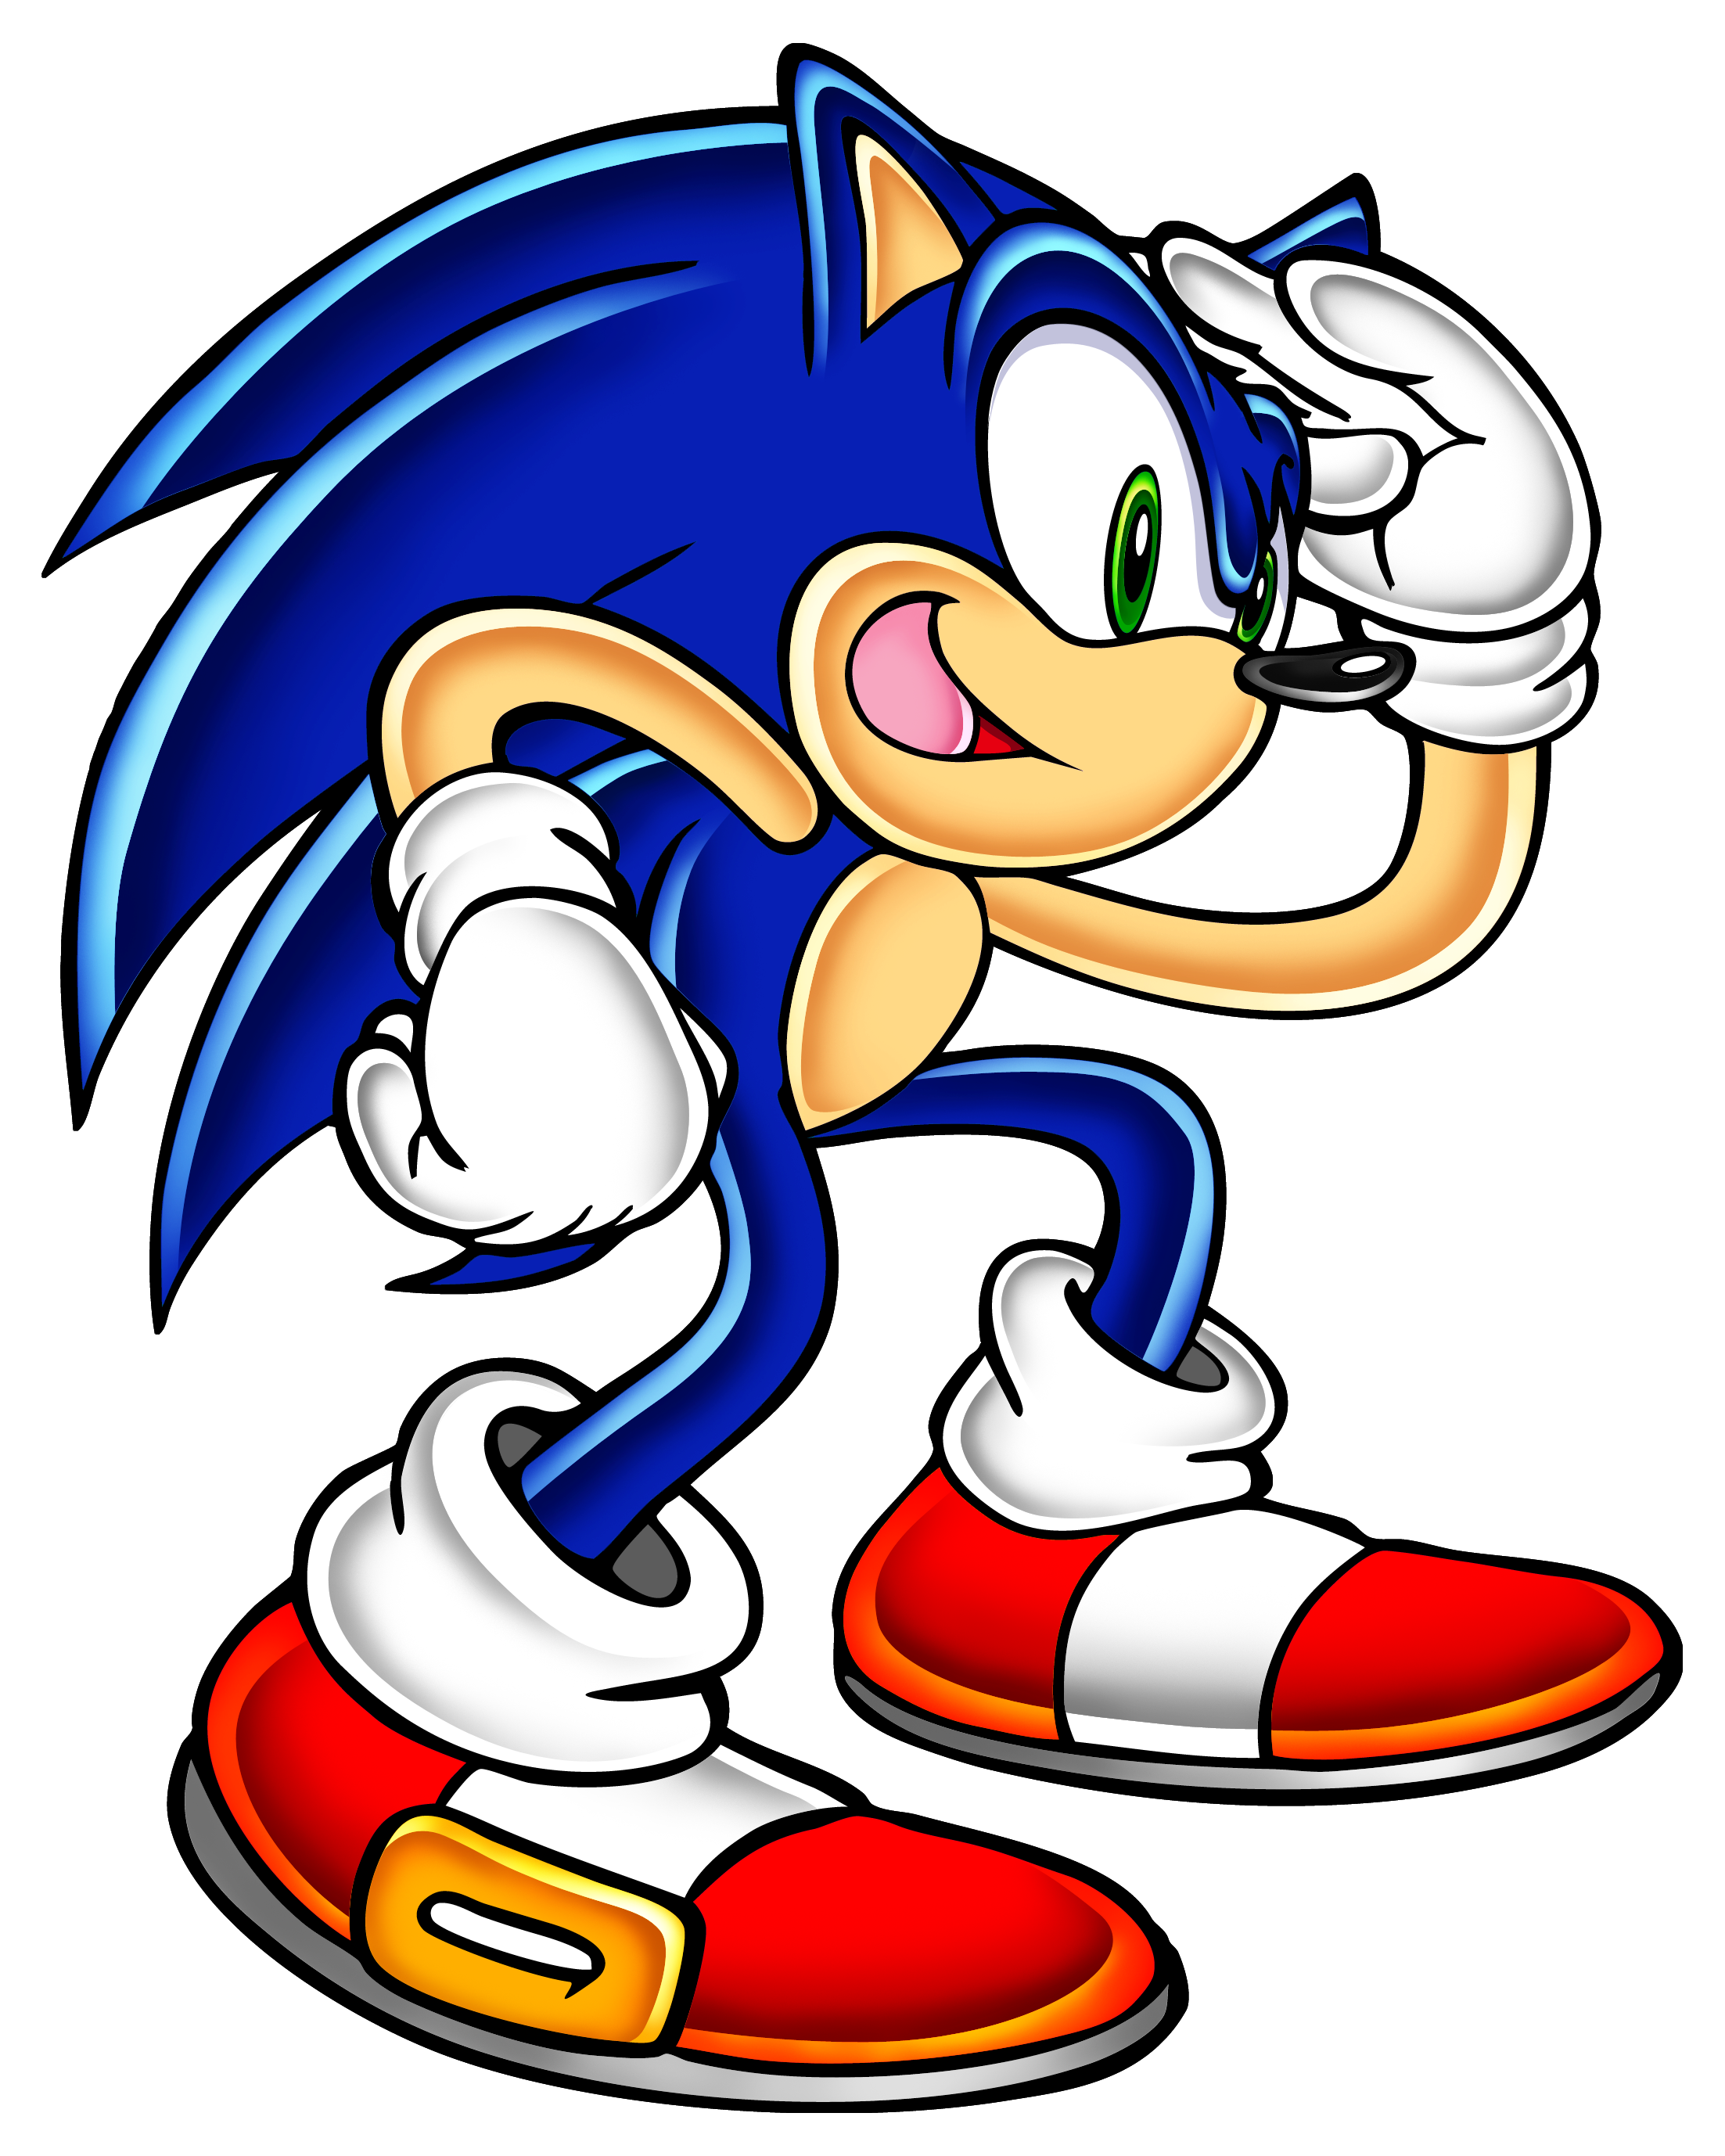 Фотку соника соник. Соник. Ёж Соник 2. Соник ботинки адвенчер. Sonic Art Sonic Adventure.